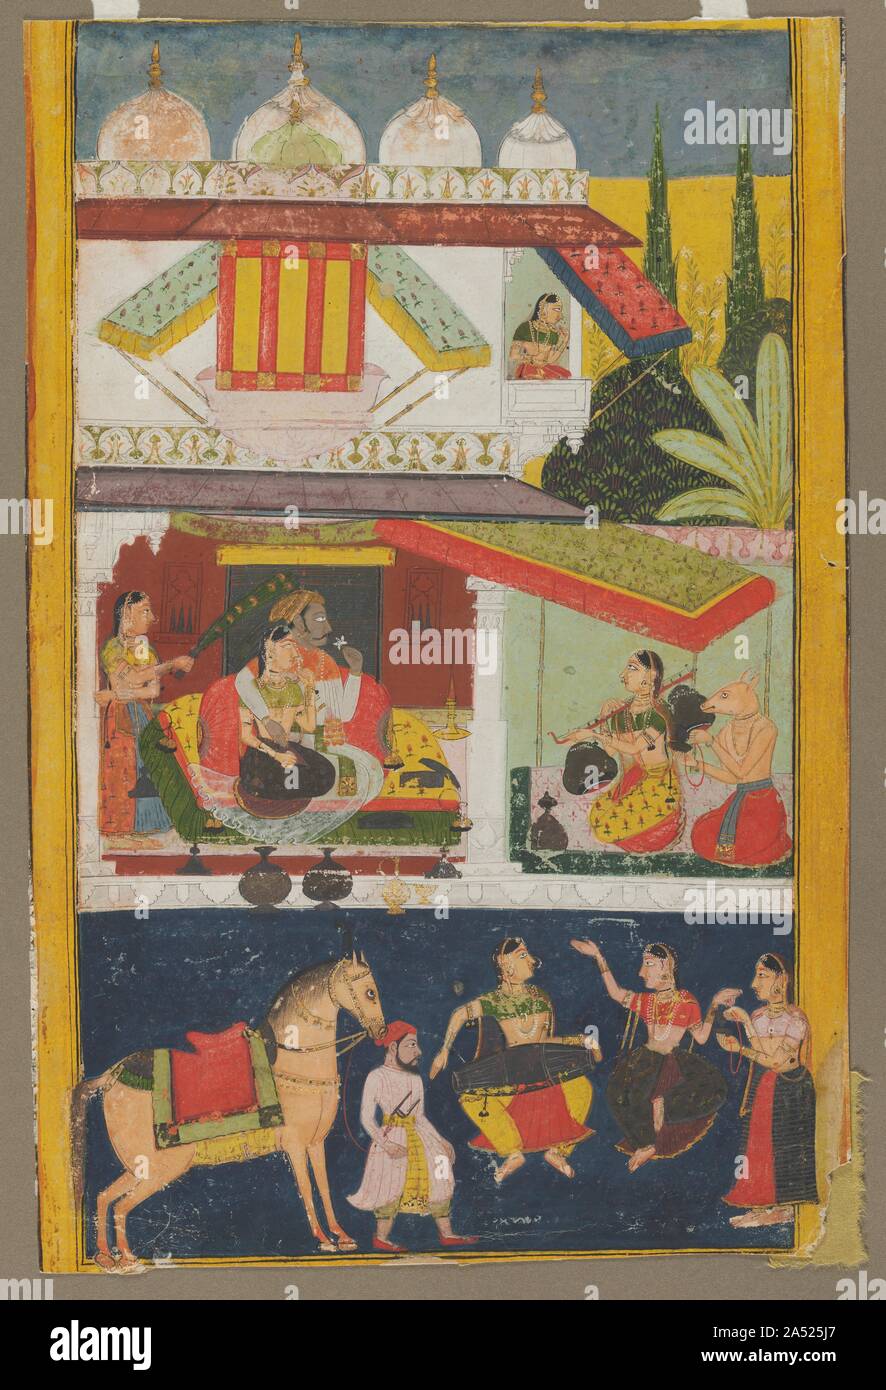 Shri Raga, c. 1695. Cette peinture est d'une importante série faite à un tournant dans l'histoire de la peinture à la cour royaume Rajput de Mewar. Pour la première fois, un patron royal, Amar Singh II (r. 1698-1710), même avant son accession au trône, a décidé d'intégrer des éléments de Mughal en art profane, comme vu dans l'architecture d'un dôme blanc et l'intérêt de transmettre une idée de l'ampleur. Néanmoins, l'artiste adhère encore à l'utilisation de registres horizontaux et bold plans de couleur. L'iconographie codifiée de Shri Raga comporte un couple royal à l'écoute de la récitation : S Banque D'Images